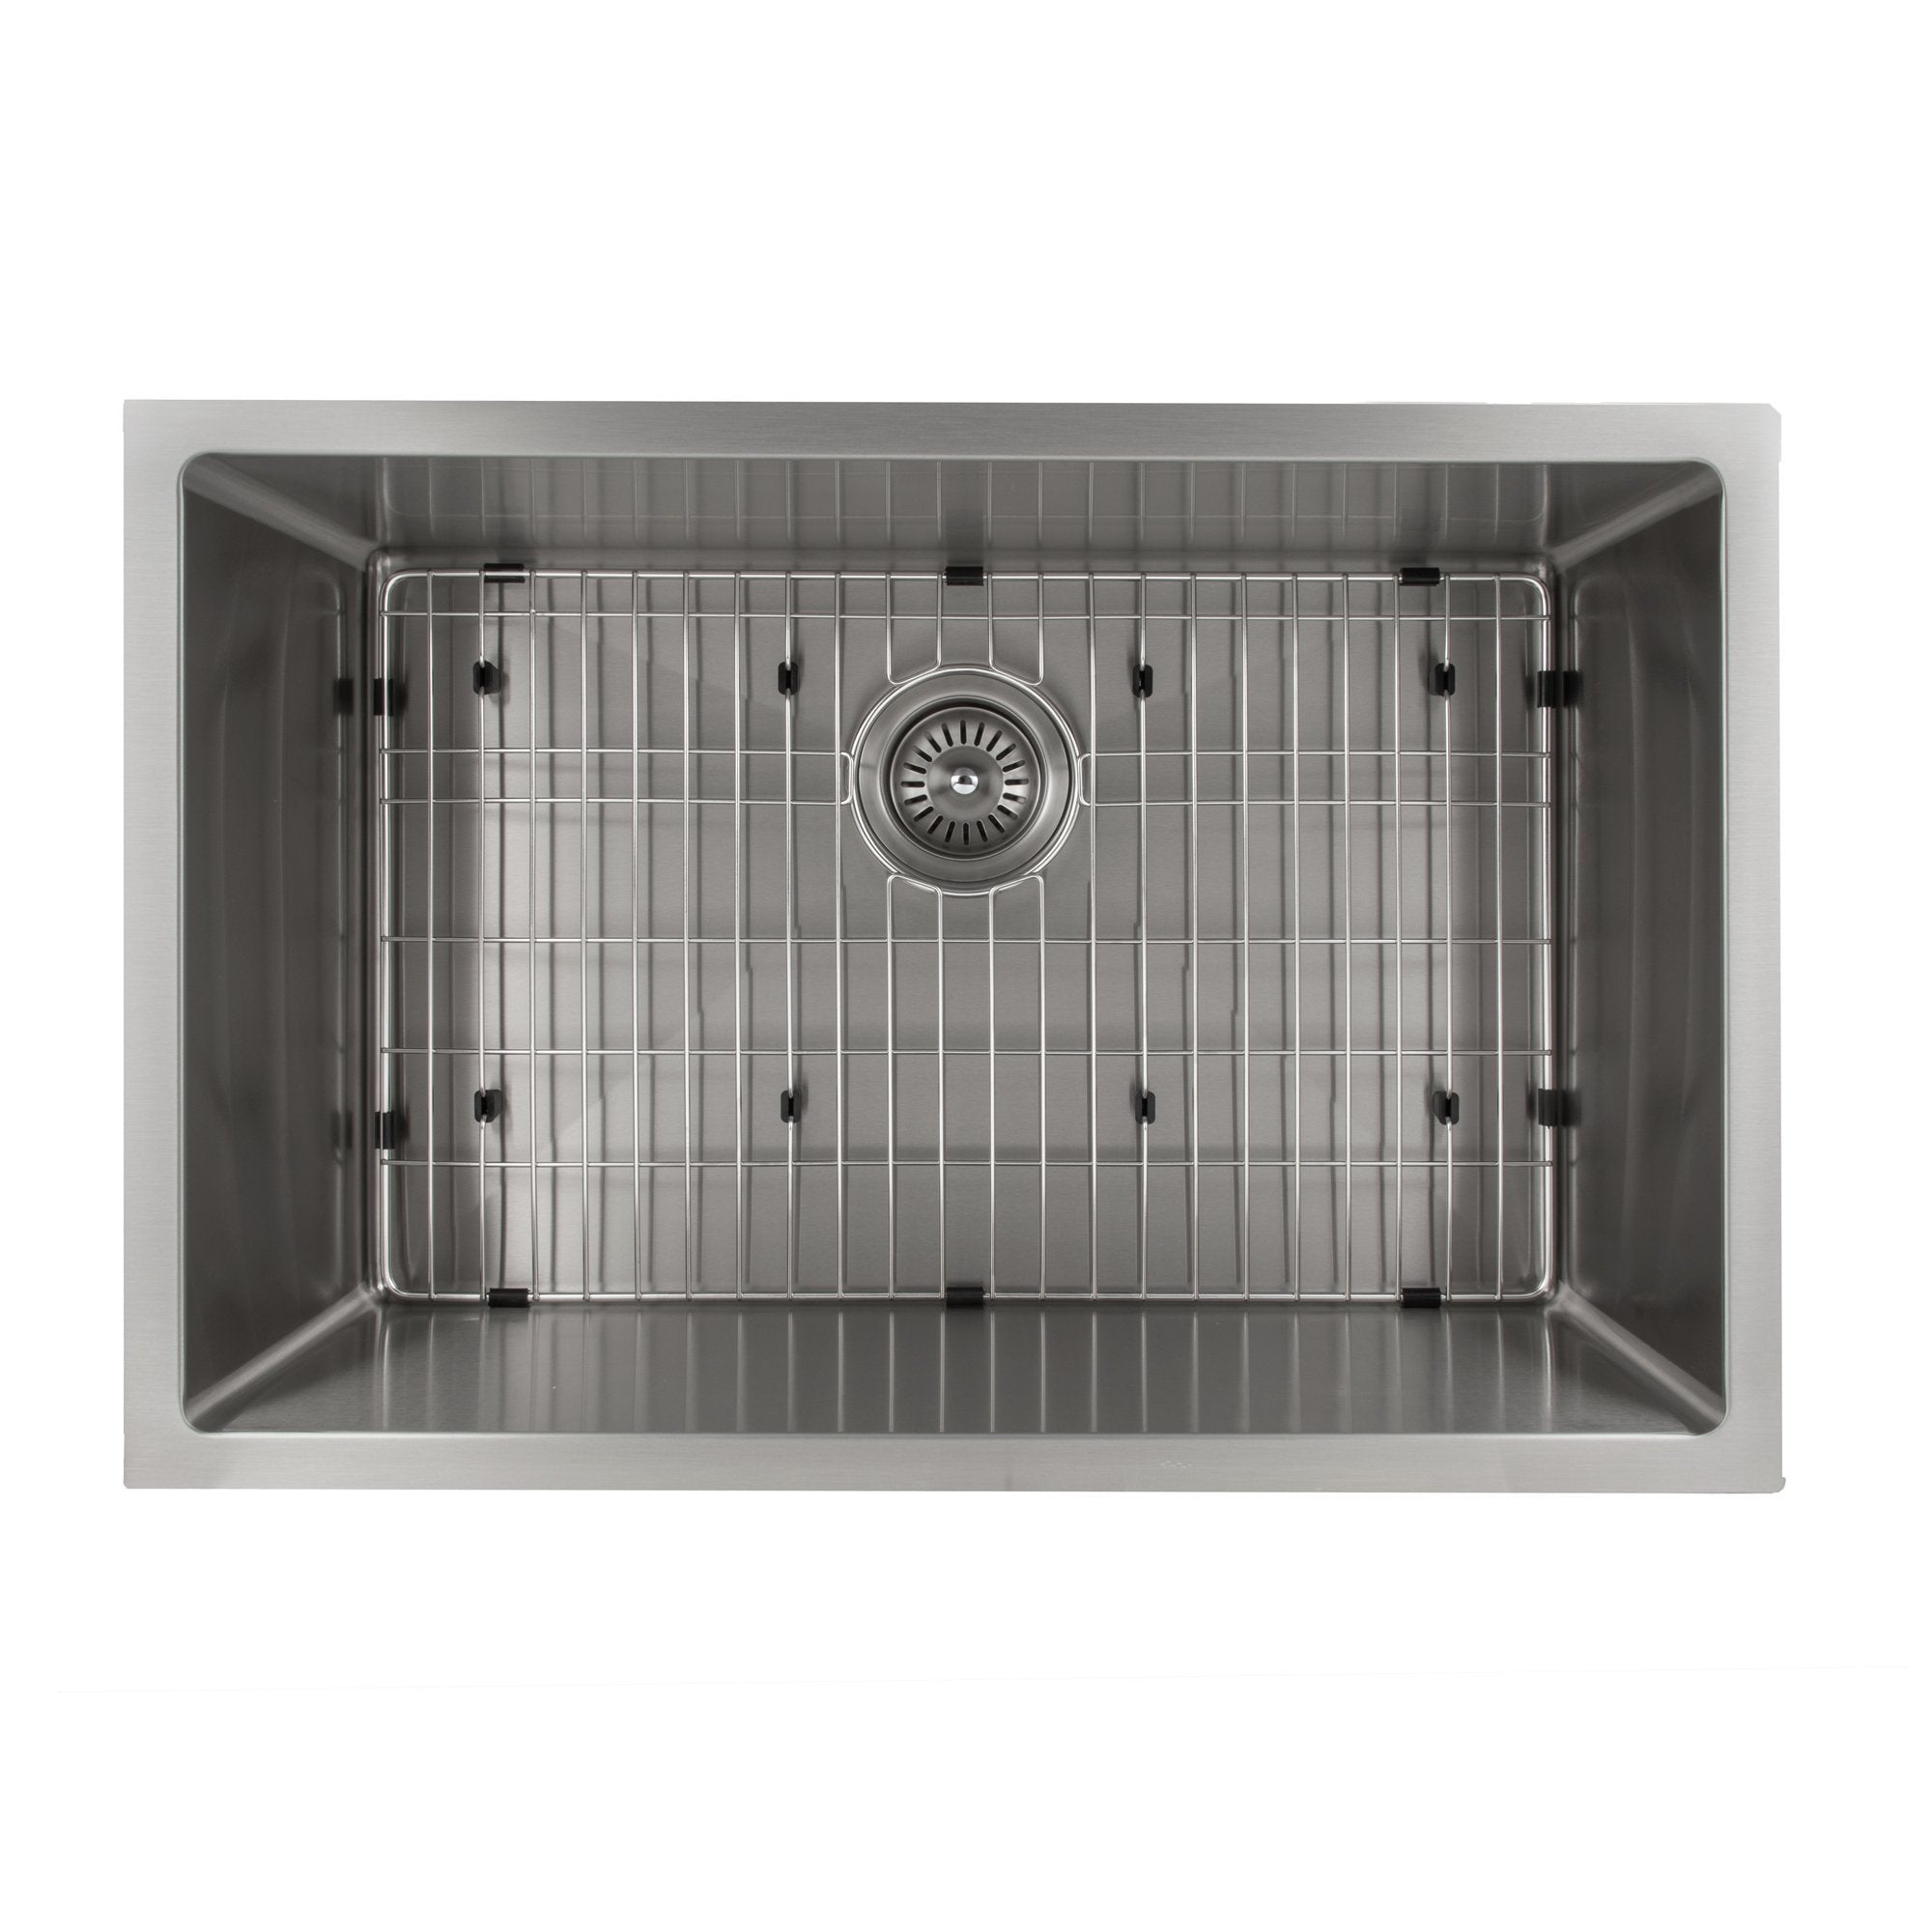 ZLINE 30" Classic Series Undermount Single Bowl Sink (SRS) - Rustic Kitchen & Bath - Sinks - ZLINE Kitchen and Bath